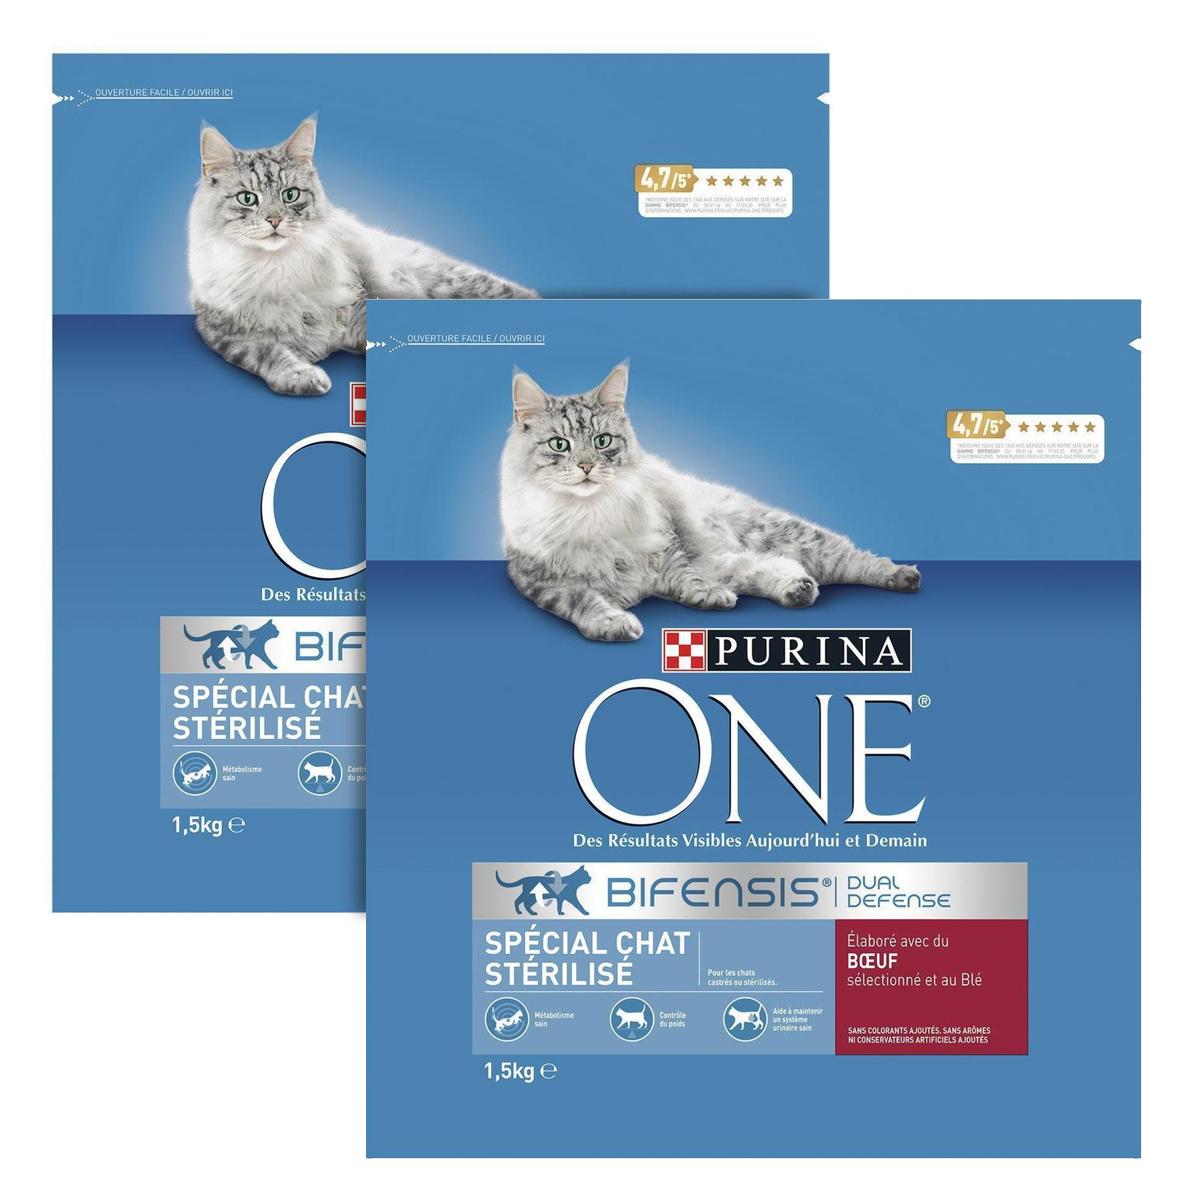 Achat Promotion Purina One Croquettes au boeuf spécial chat stérilisé